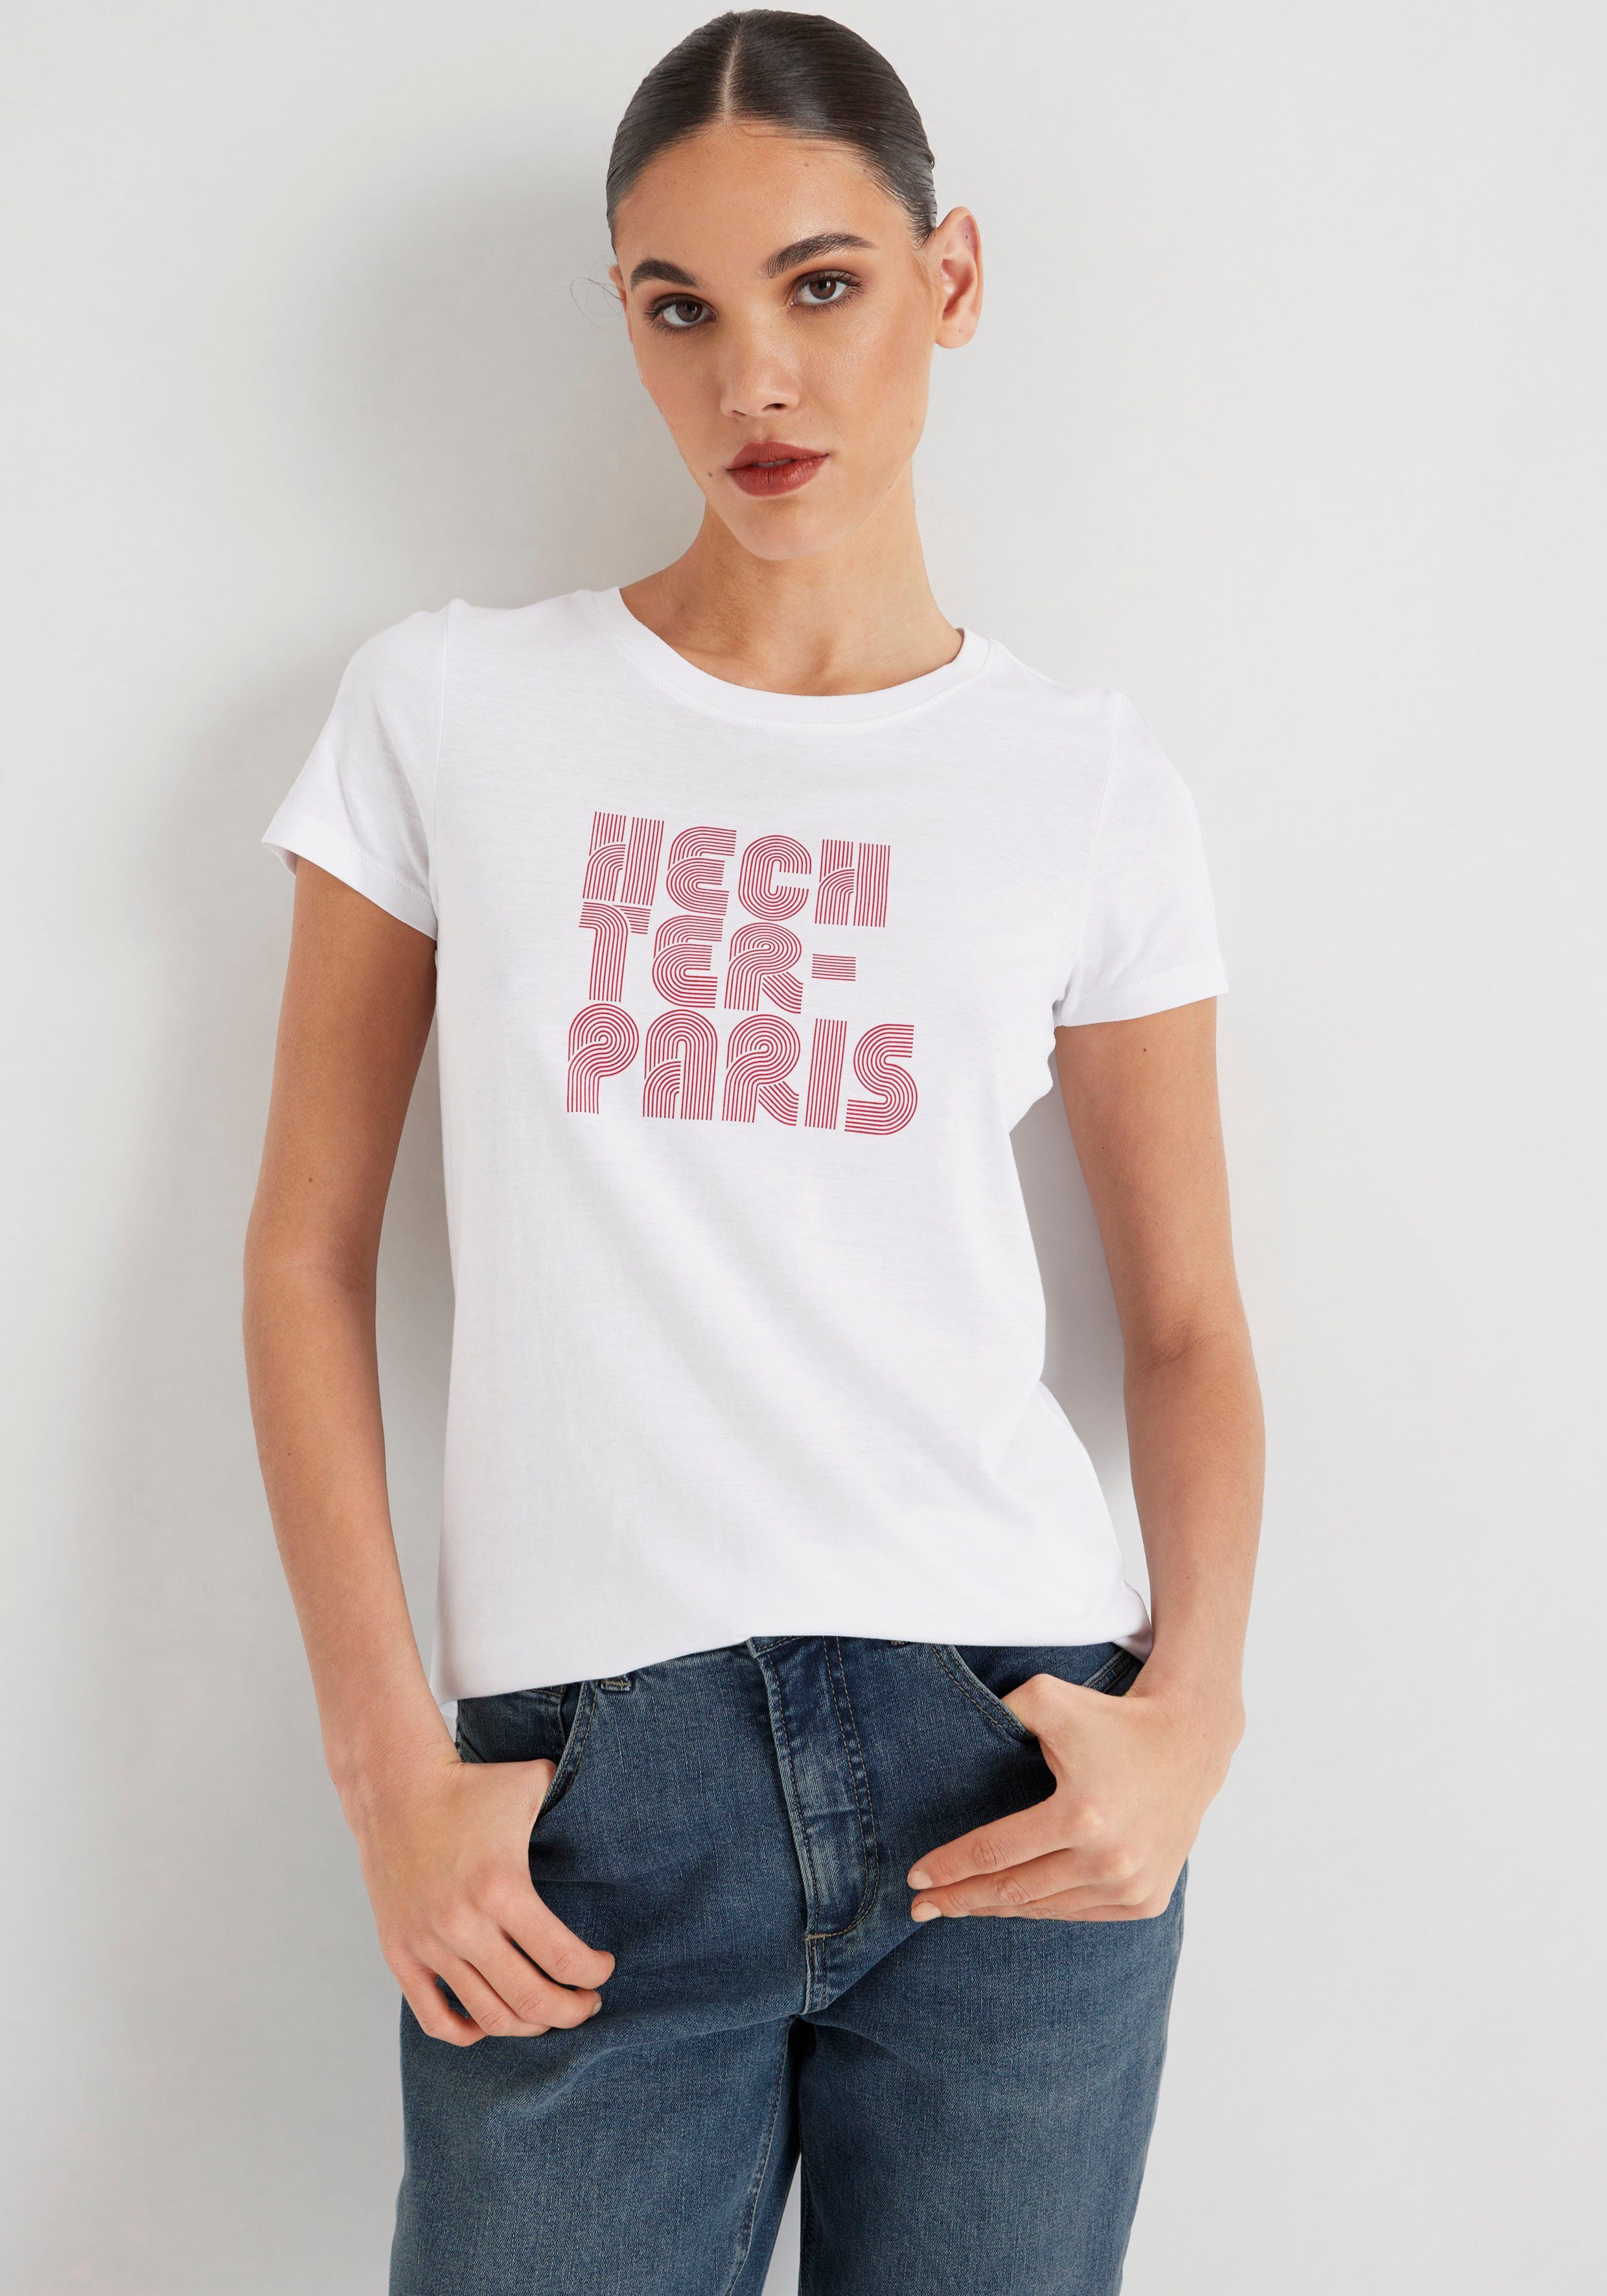 mit HECHTER Druck PARIS T-Shirt weiß-rot